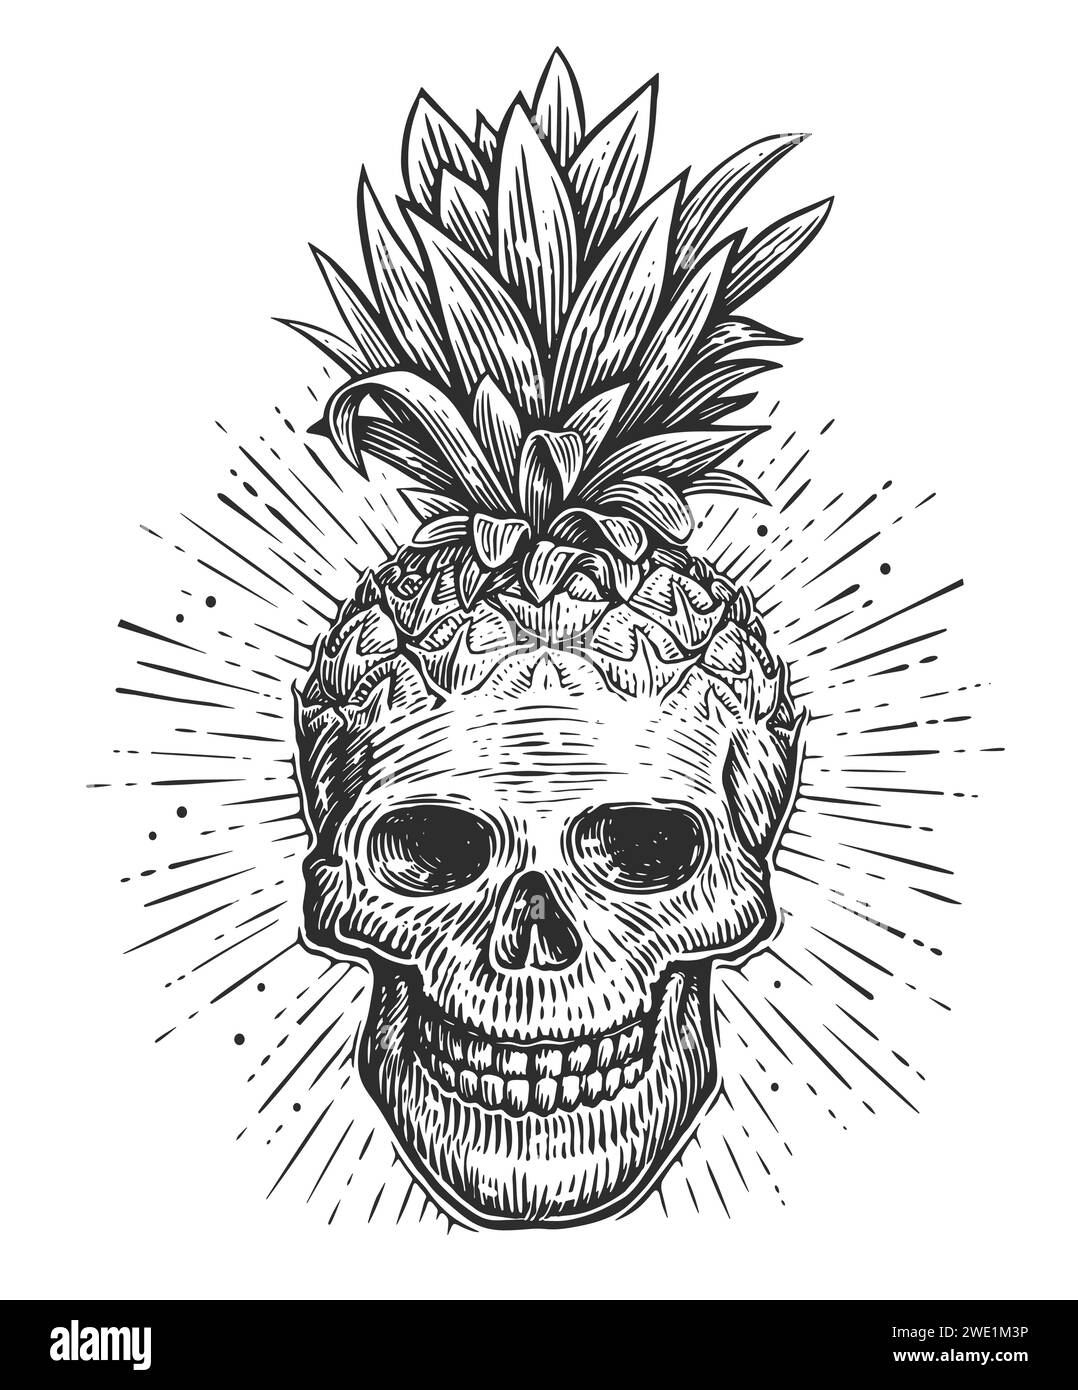 Cranio umano con foglie. Schizzo della testa dello scheletro. Illustrazione vettoriale creativa disegnata a mano Illustrazione Vettoriale